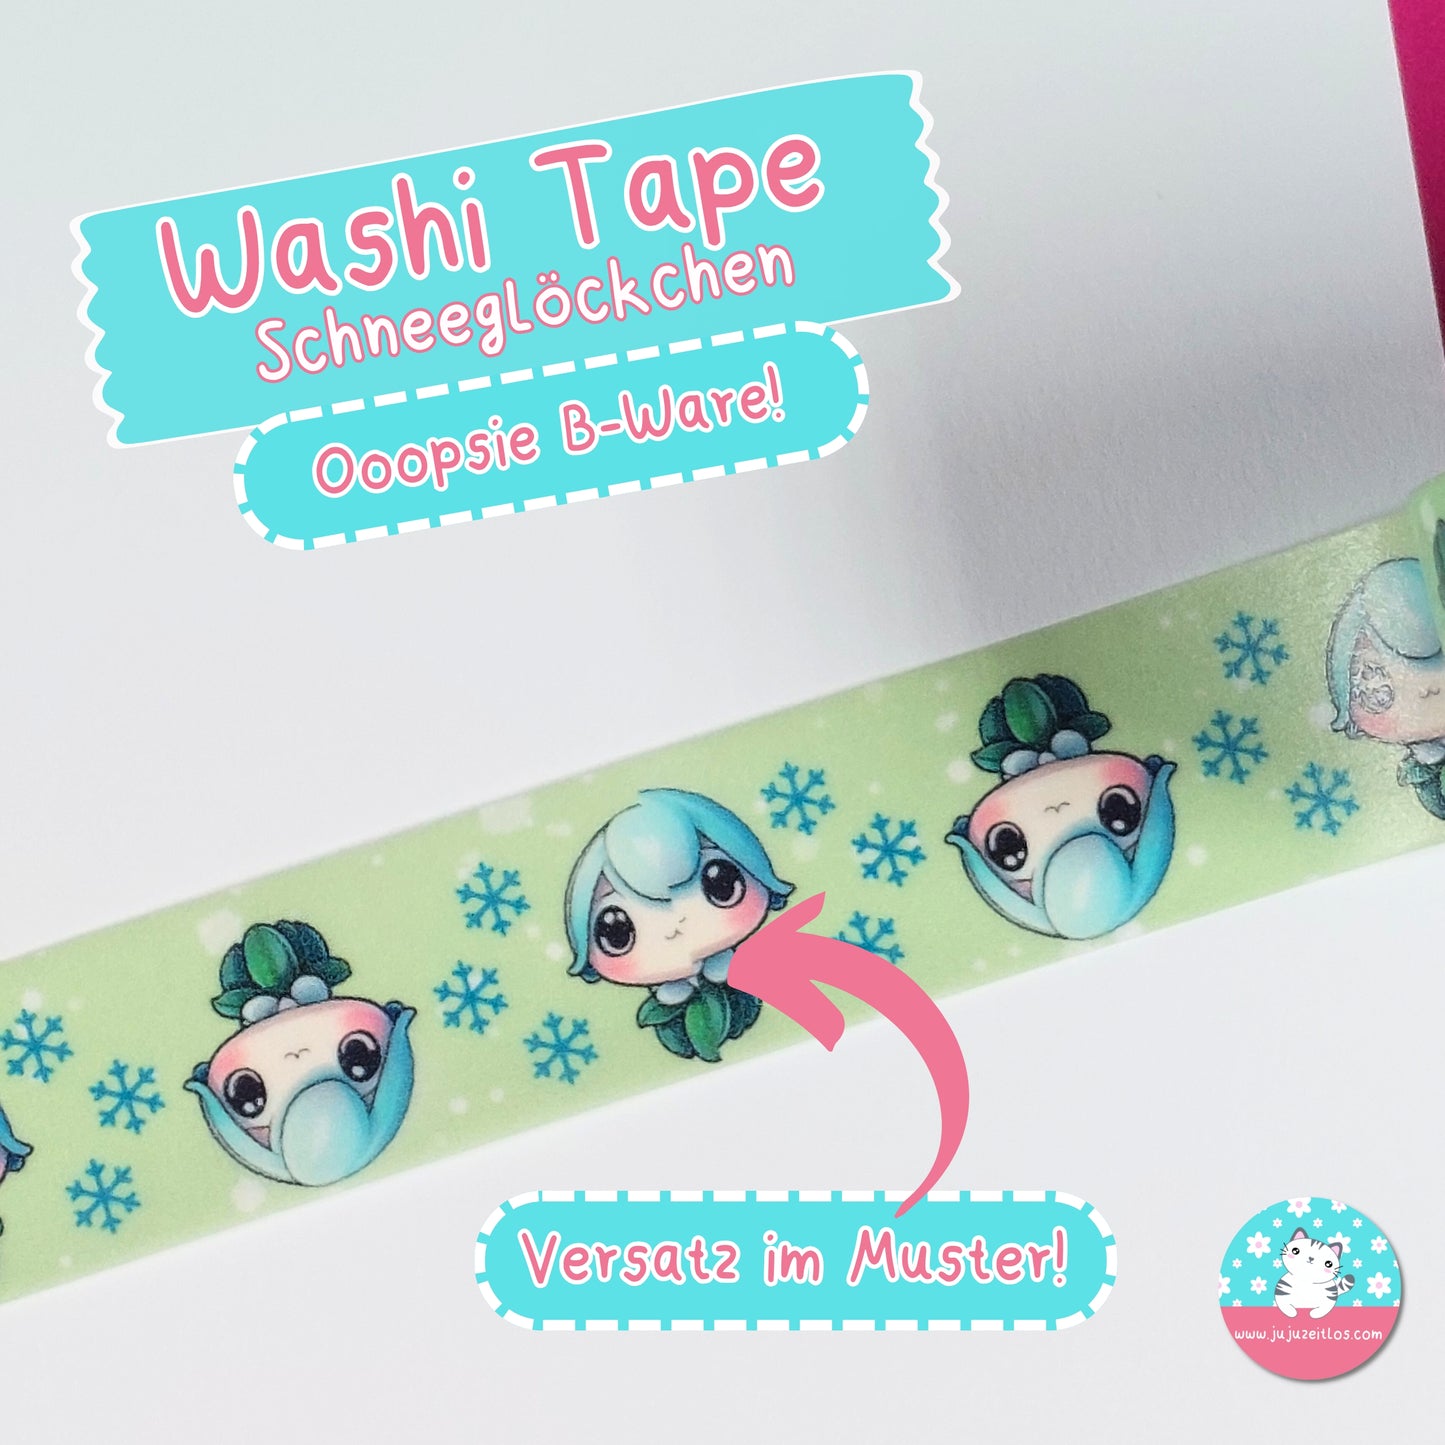 Ooopsie Washi Tape Schneeglöckchen